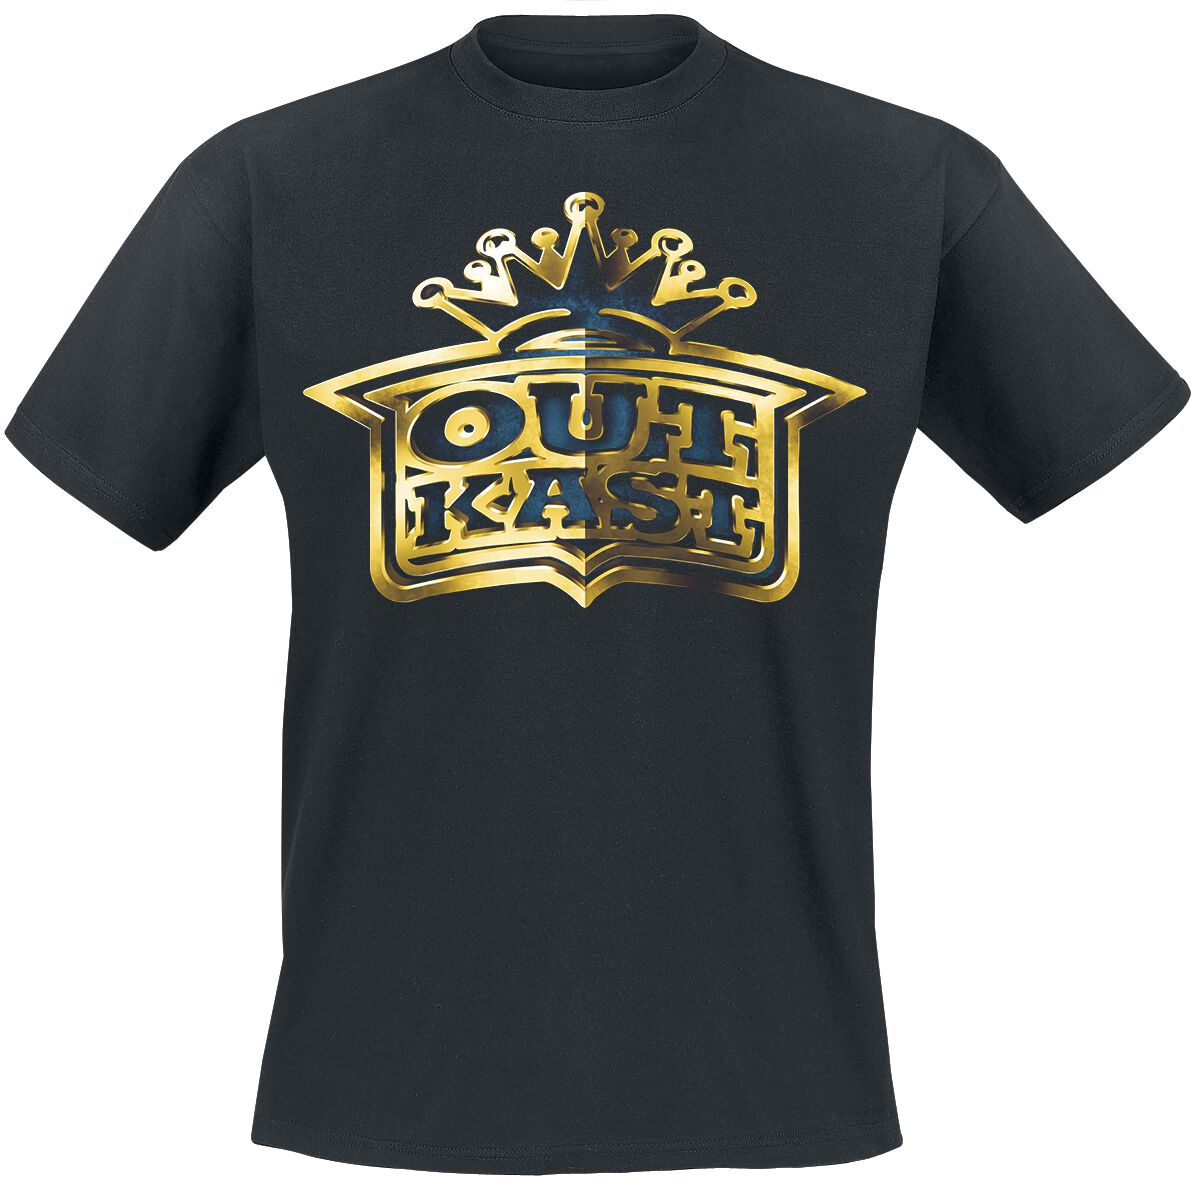 OutKast T-Shirt - Gold Logo - S bis L - für Männer - Größe S - schwarz  - Lizenziertes Merchandise!